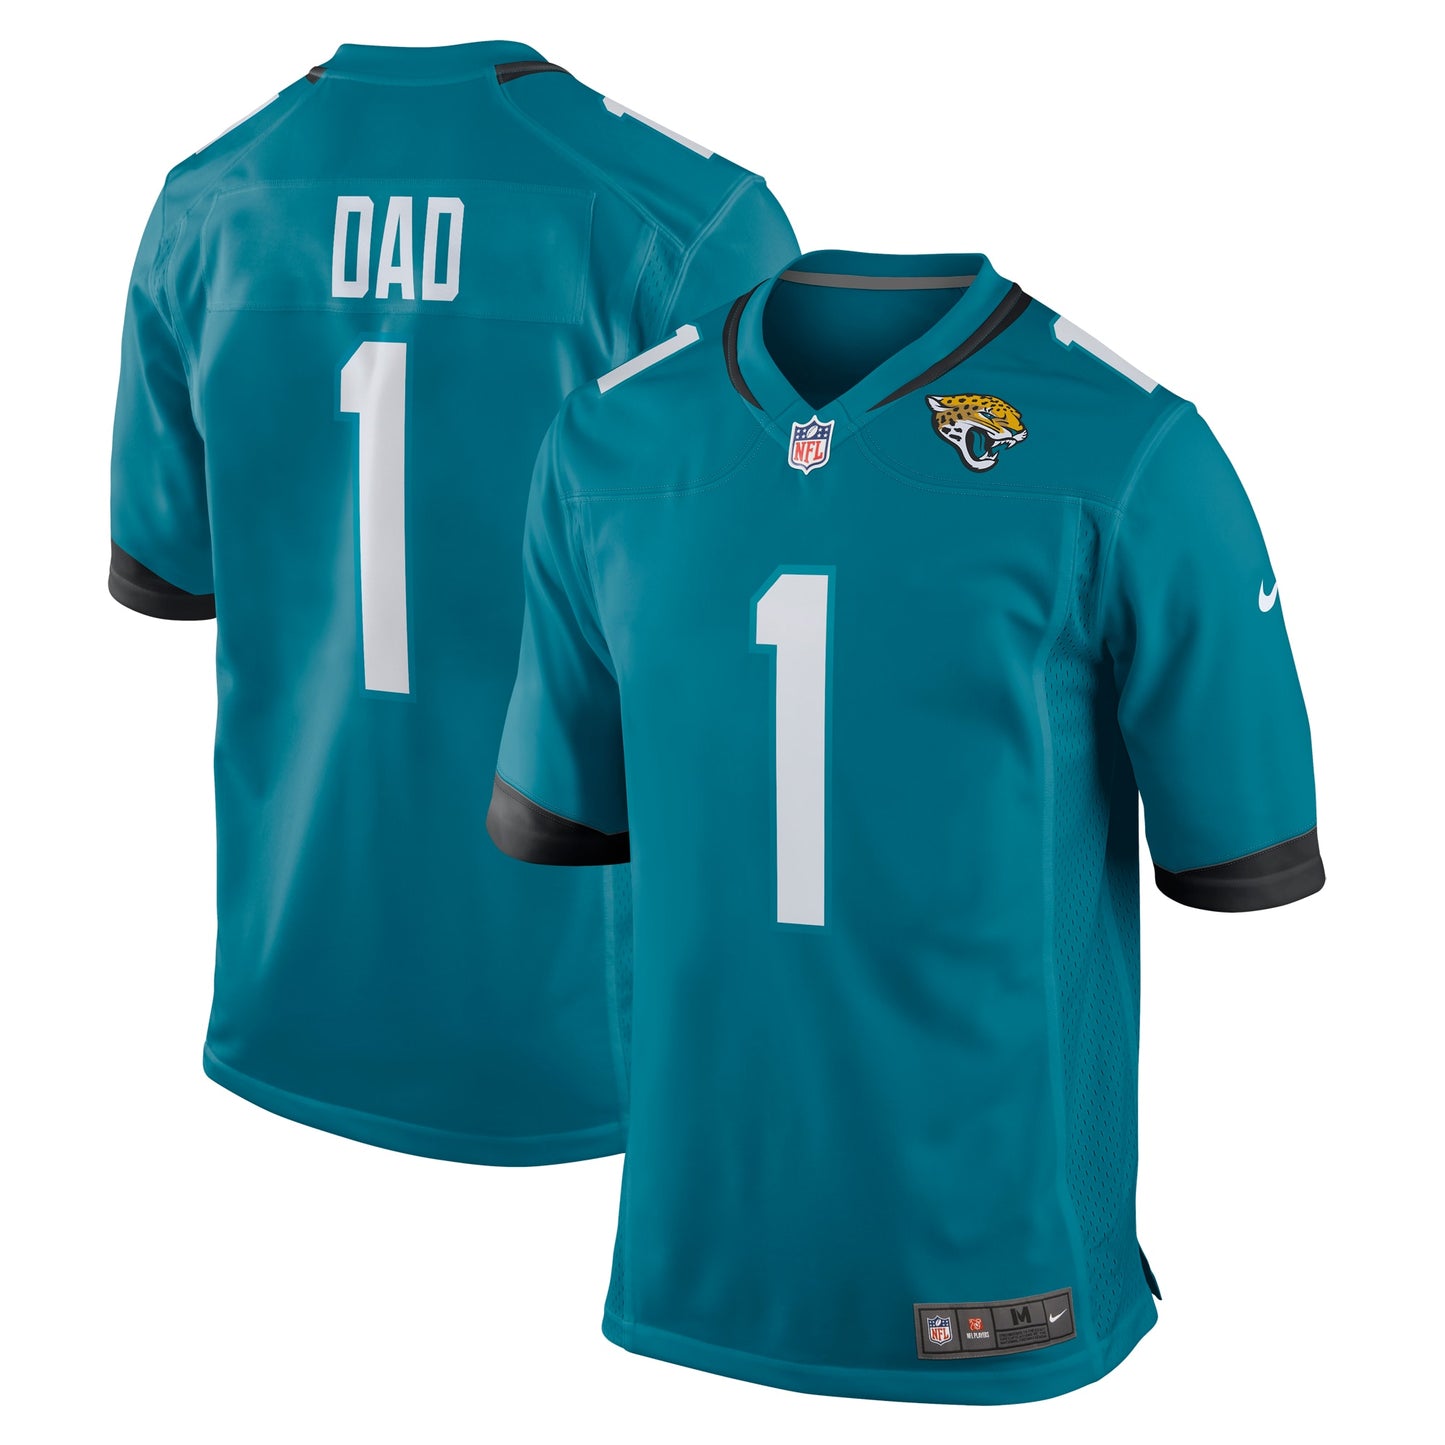 Number 1 Dad Jacksonville Jaguars Nike Game Jersey - Teal